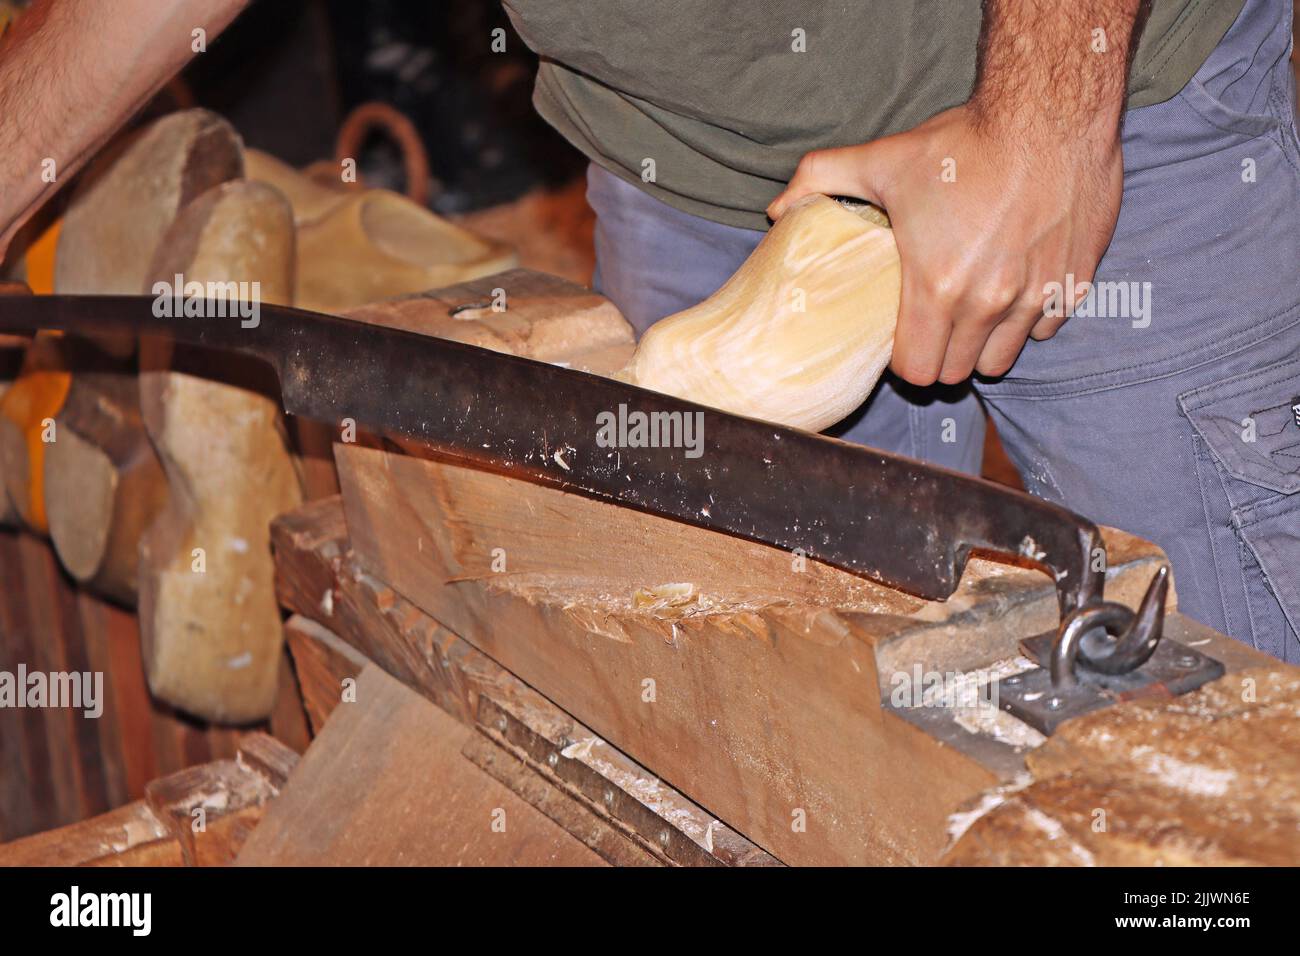 La fabricación de zuecos, una artesanía tradicional holandesa de la fabricación de zapatos tradicionales de madera. Foto de stock